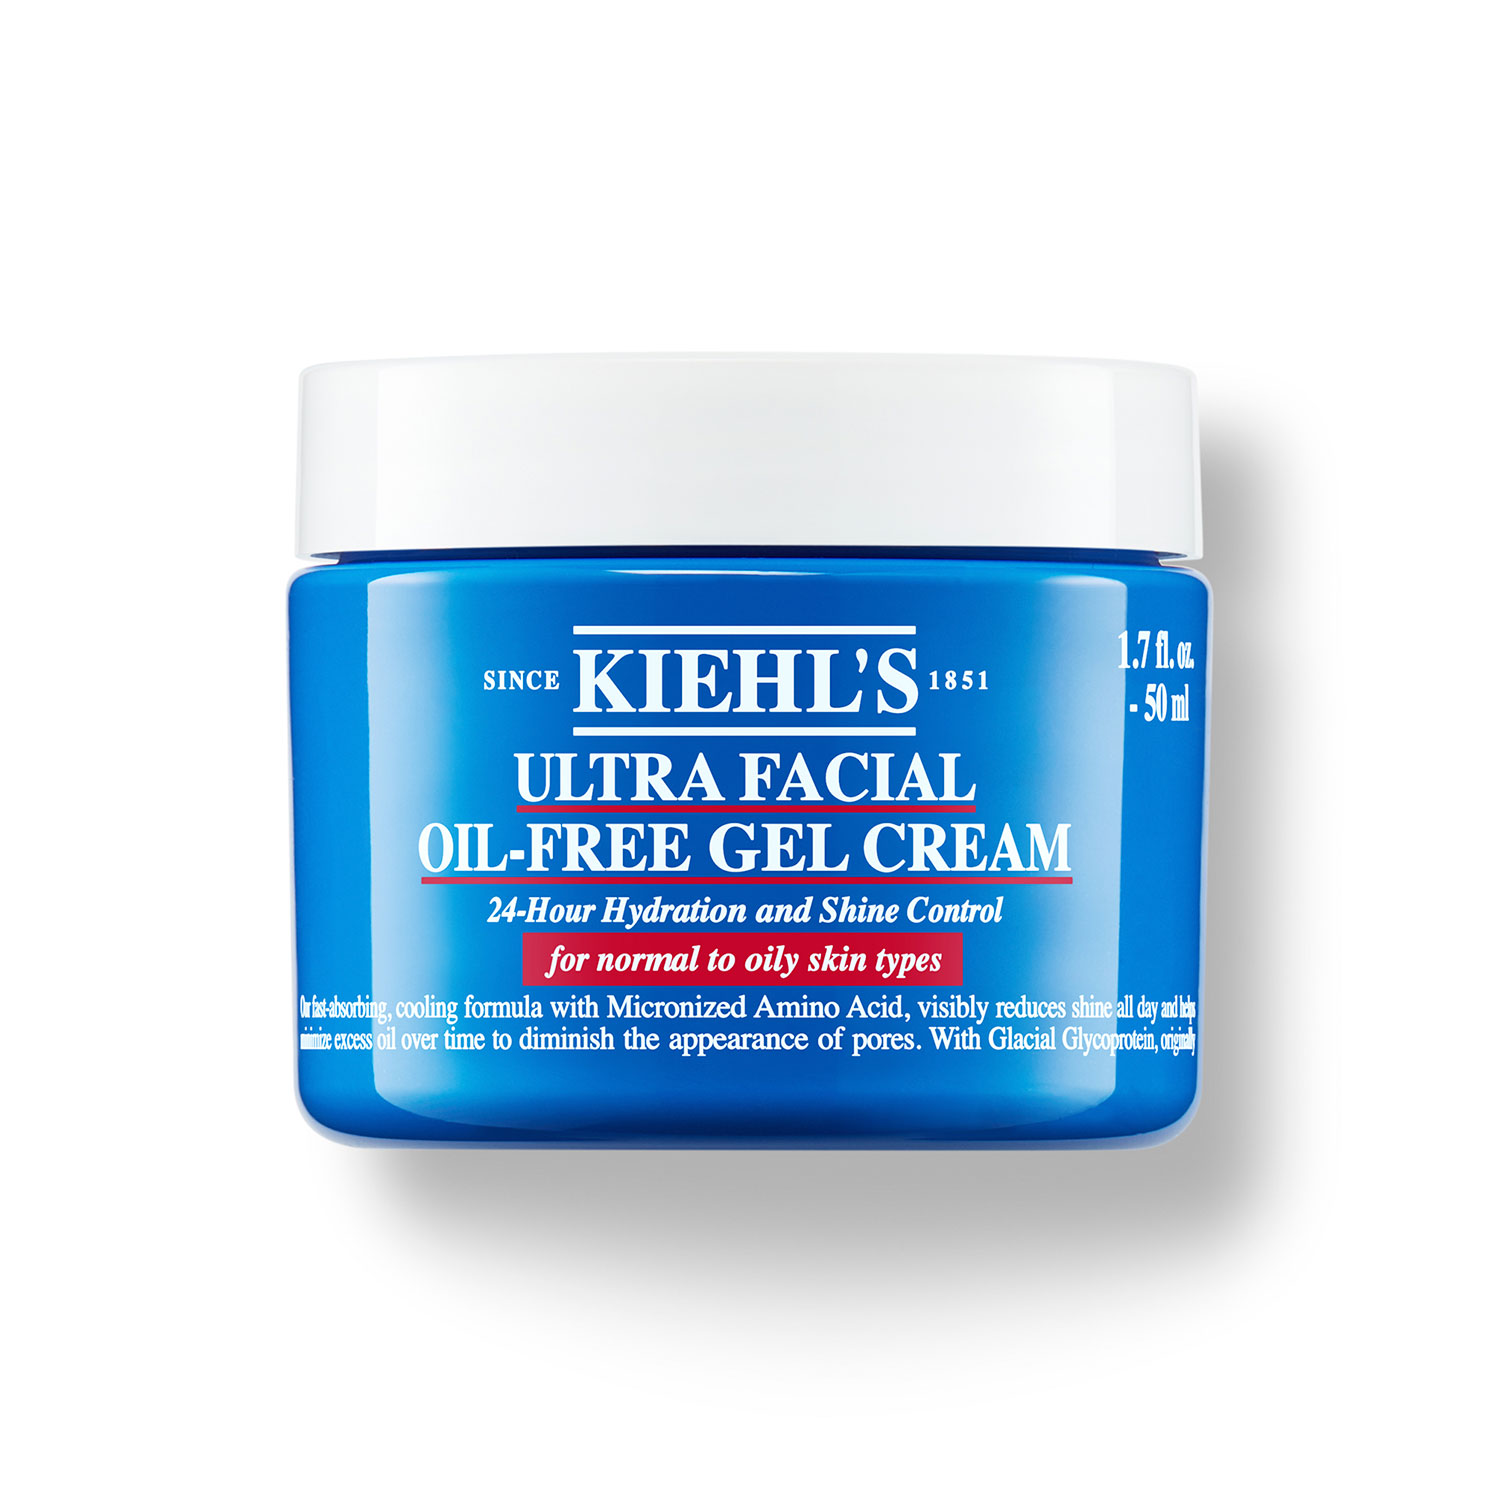 ultra facial oil-free gel cream (gel hidratante para piel grasa)